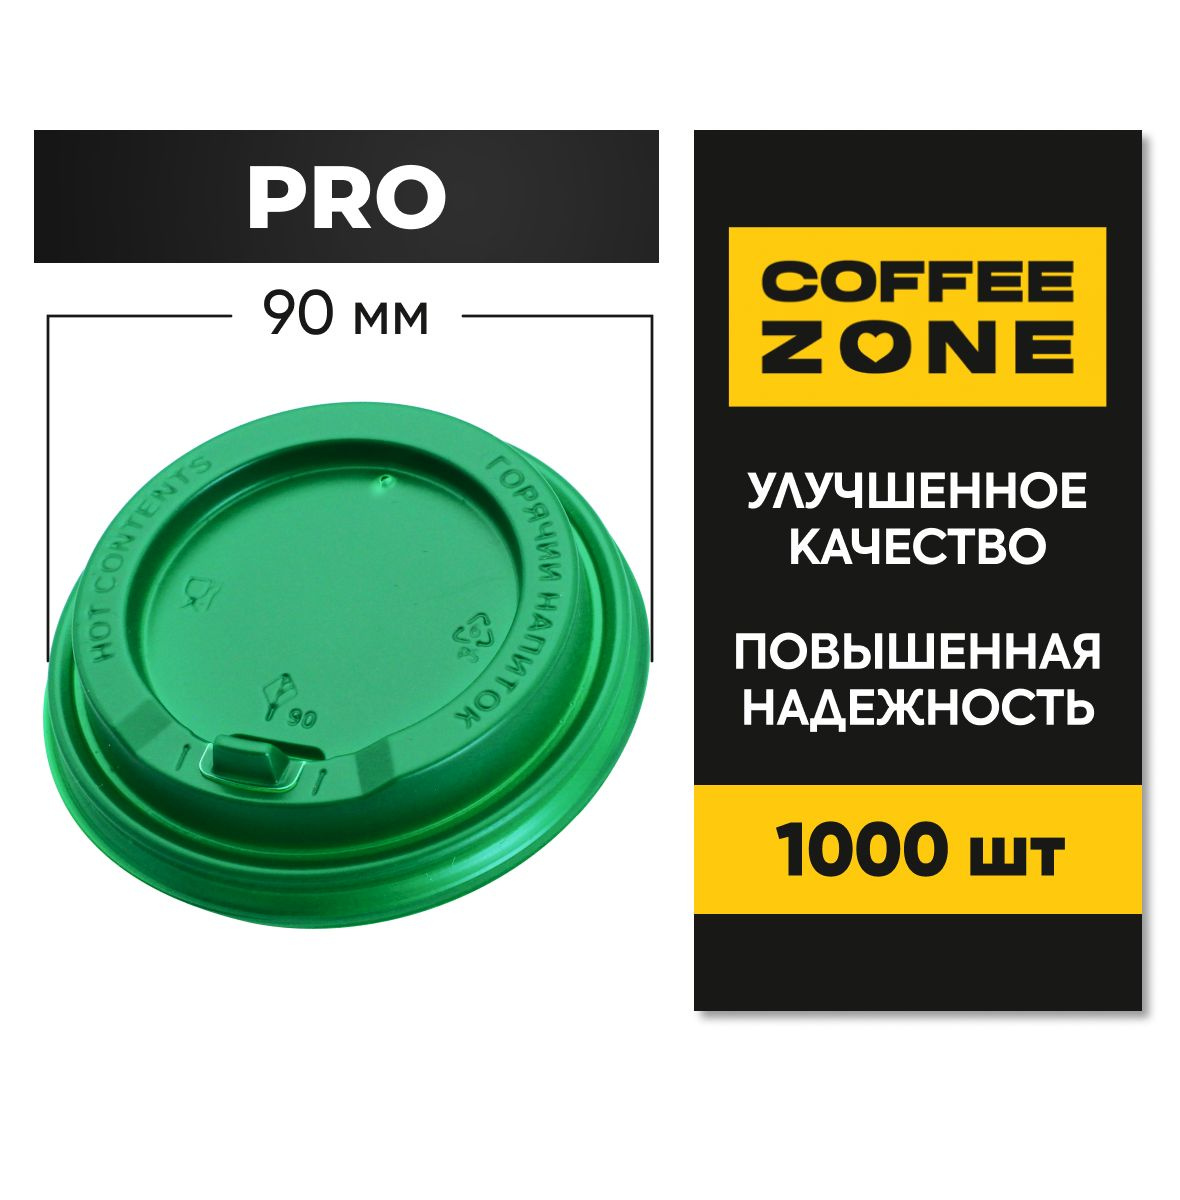 Крышки 90 мм / 1000 штук PRO Зеленые одноразовые c клапаном (откидным питейником) пищевые пластиковые повышенной прочности от COFFEE ZONE для стаканов 300 мл - 400 мл